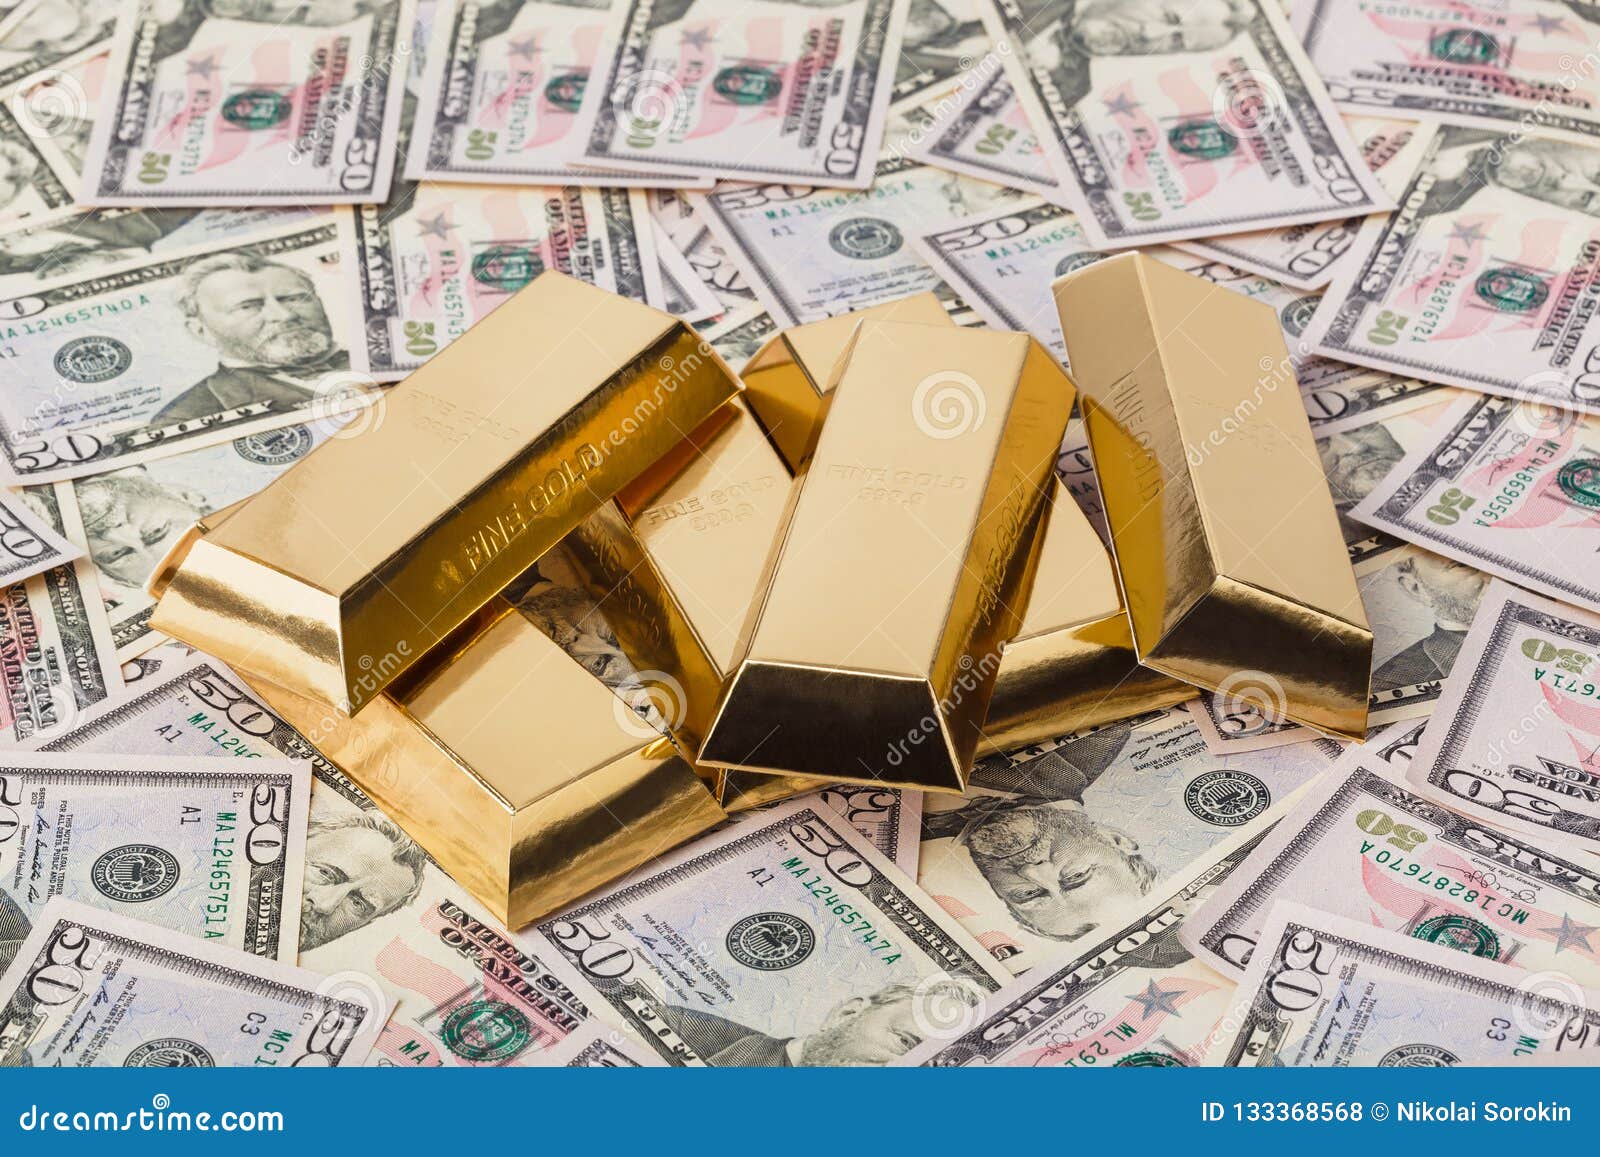 Tiền và Vàng: Hãy khám phá hình ảnh đầy quyền lực của tiền vàng. Bạn sẽ được chiêm ngưỡng những đồng tiền vàng cùng những kho báu tiền bạc đầy ấn tượng. Hãy cùng tận hưởng cảm giác sướng tay khi được ngắm nhìn những thứ hiếm có này.